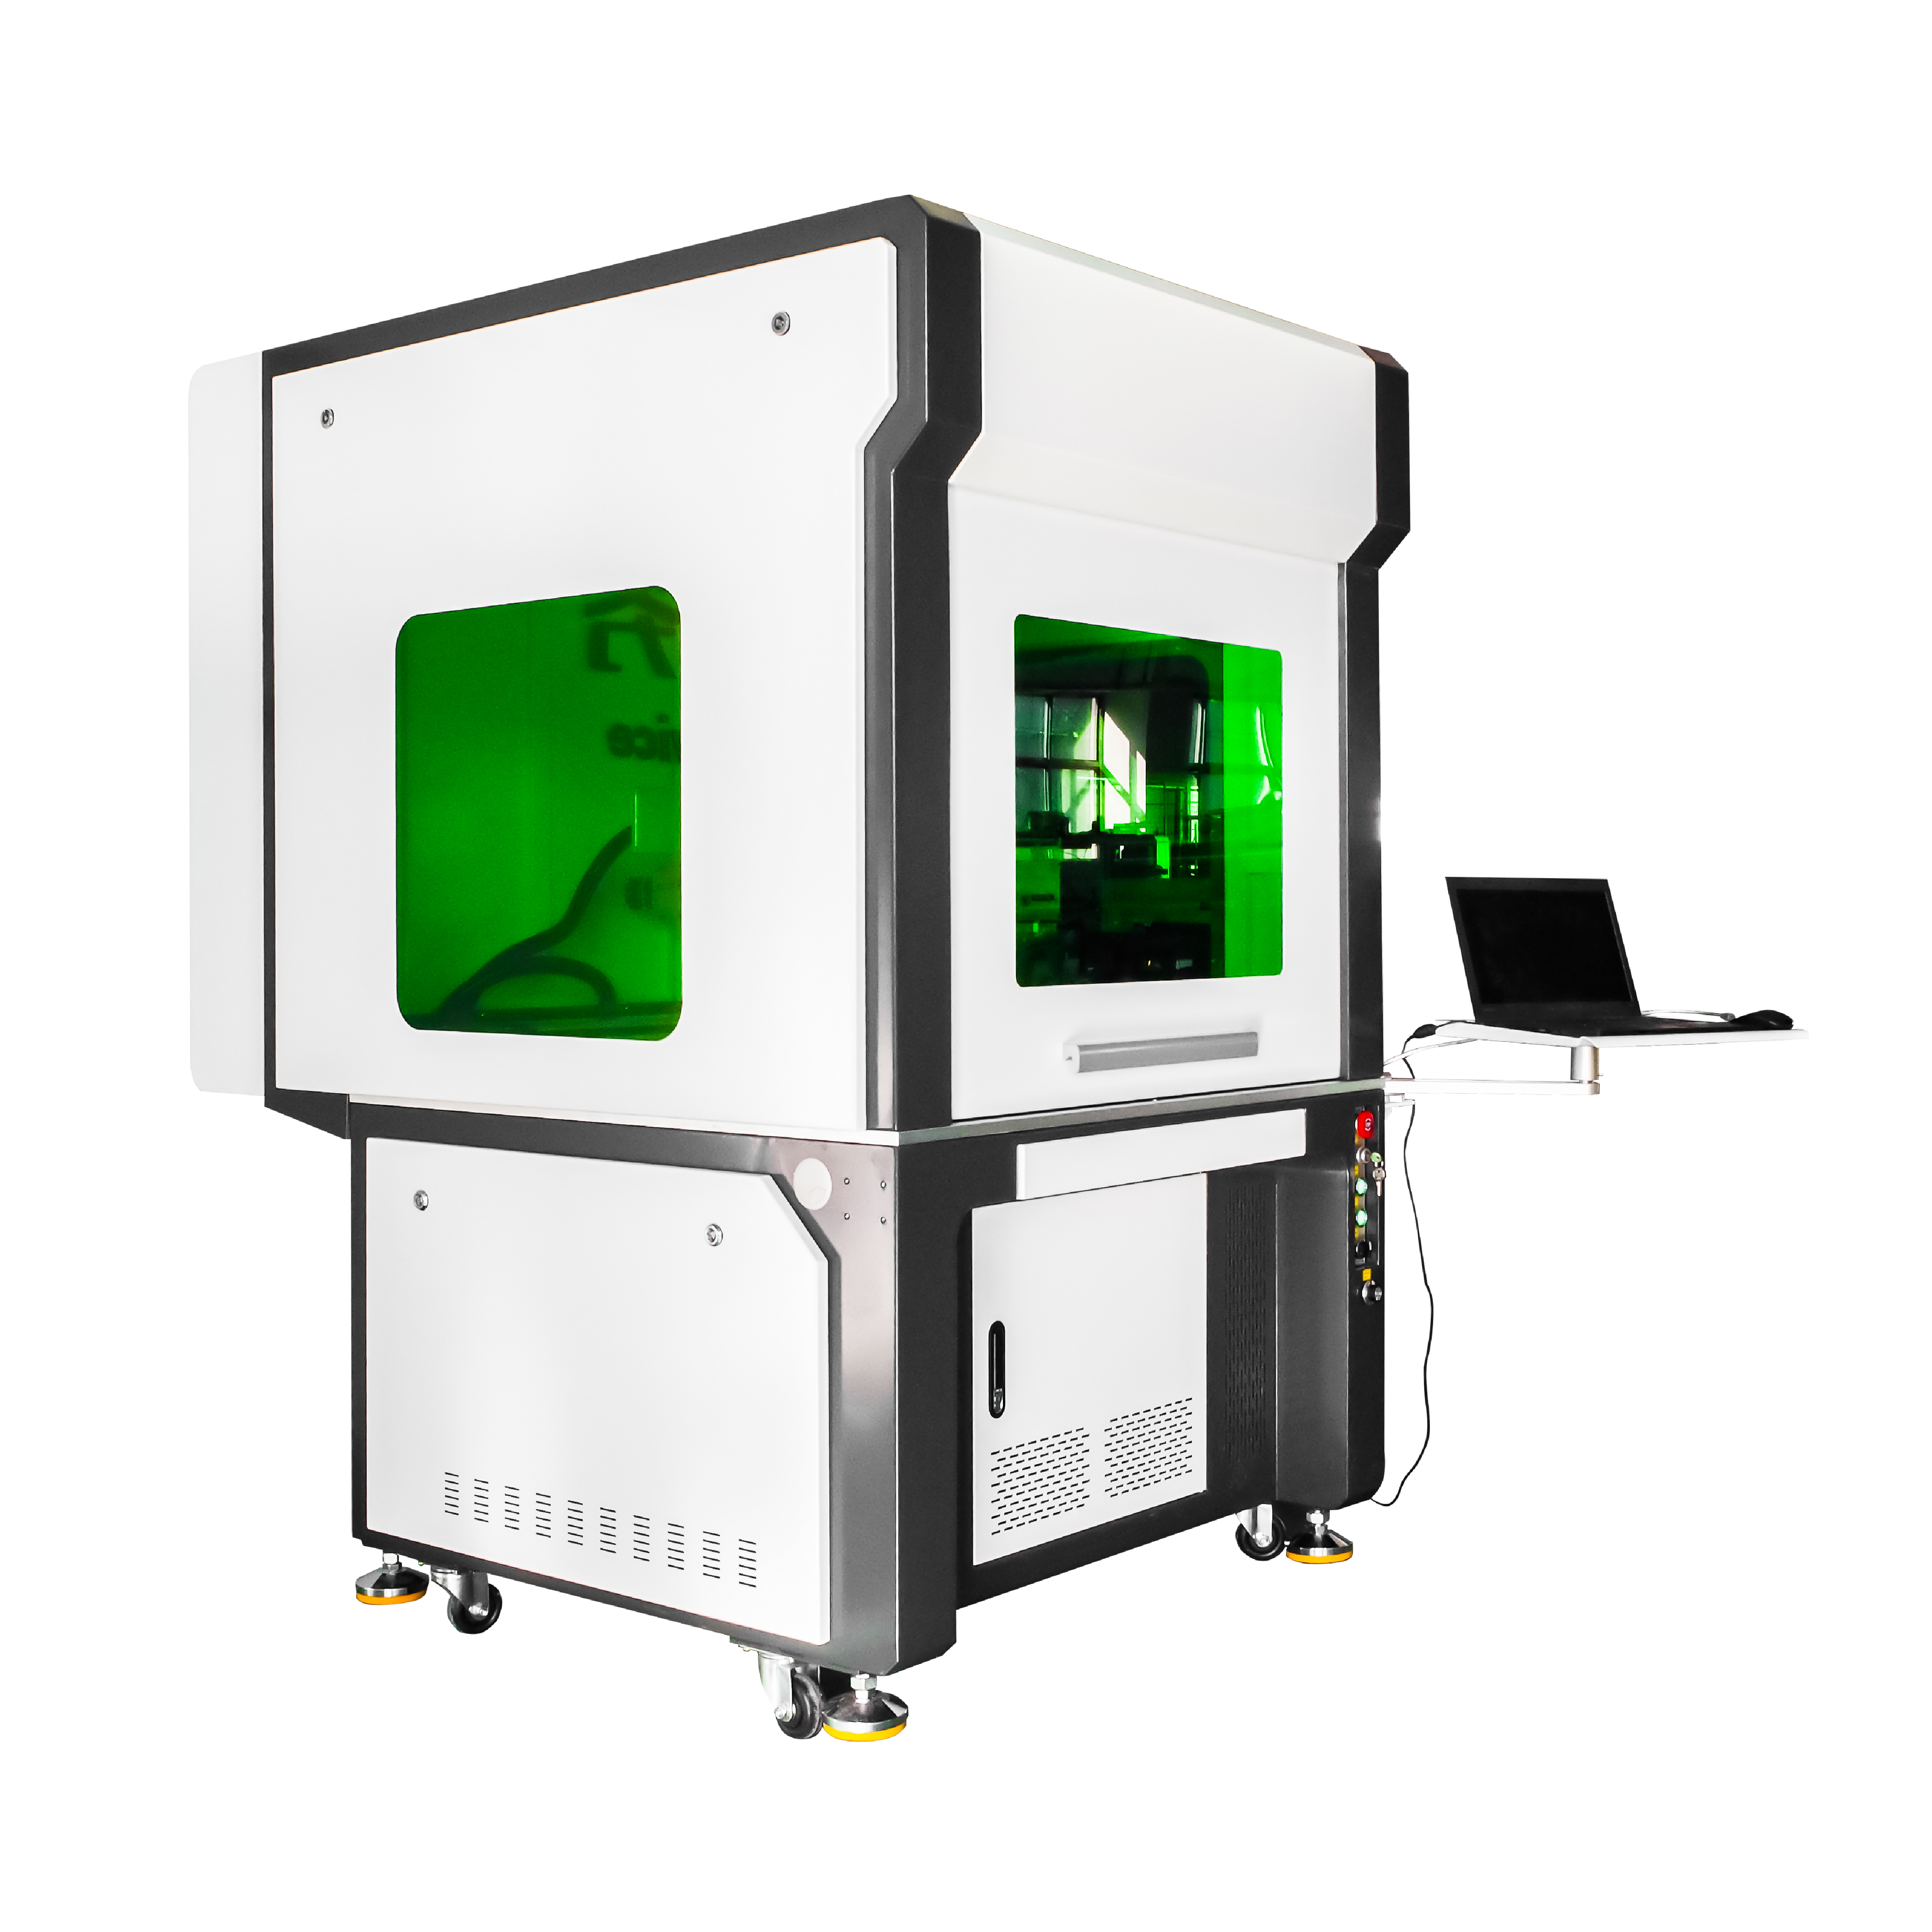 800 * 800 mm 1000 * 100 mm Fiber Mopa Lasermarkiermaschine zum Gravieren von großflächigen / Laserspleißmarkierungen